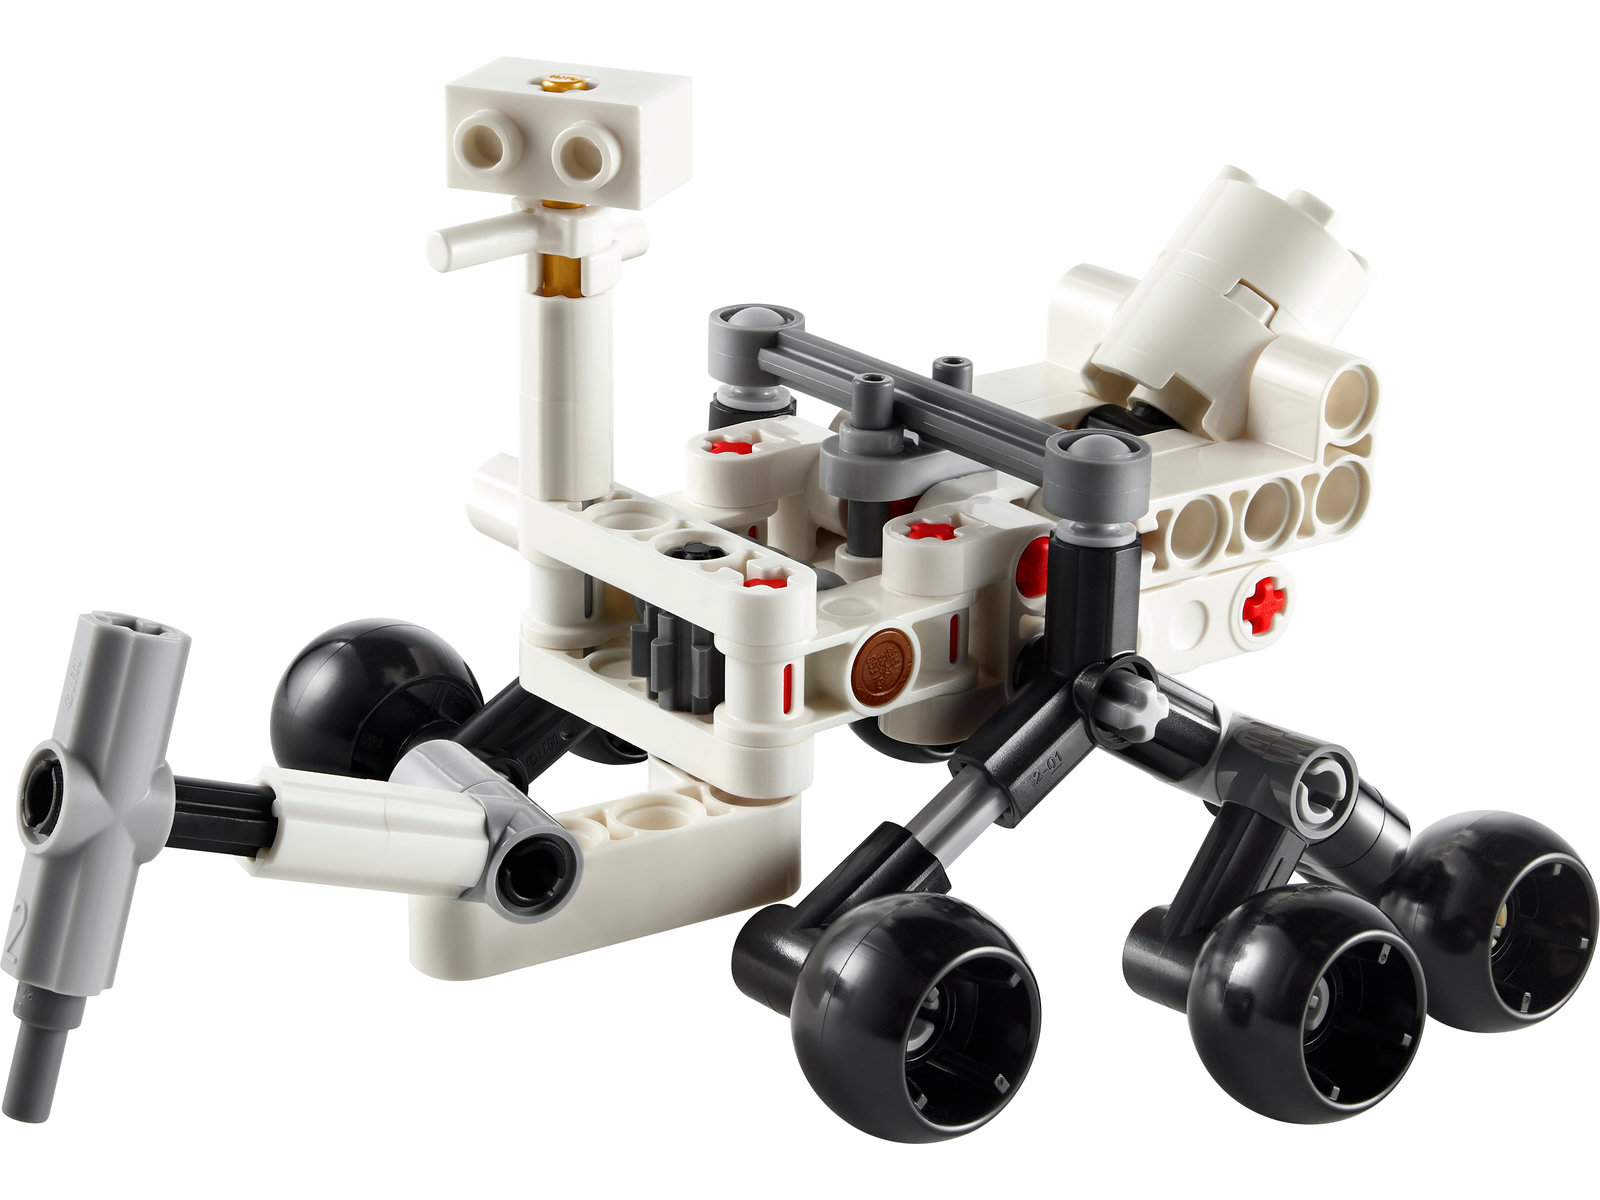 LEGO® Technic 30682 - NASA Mars Rover Perseverance